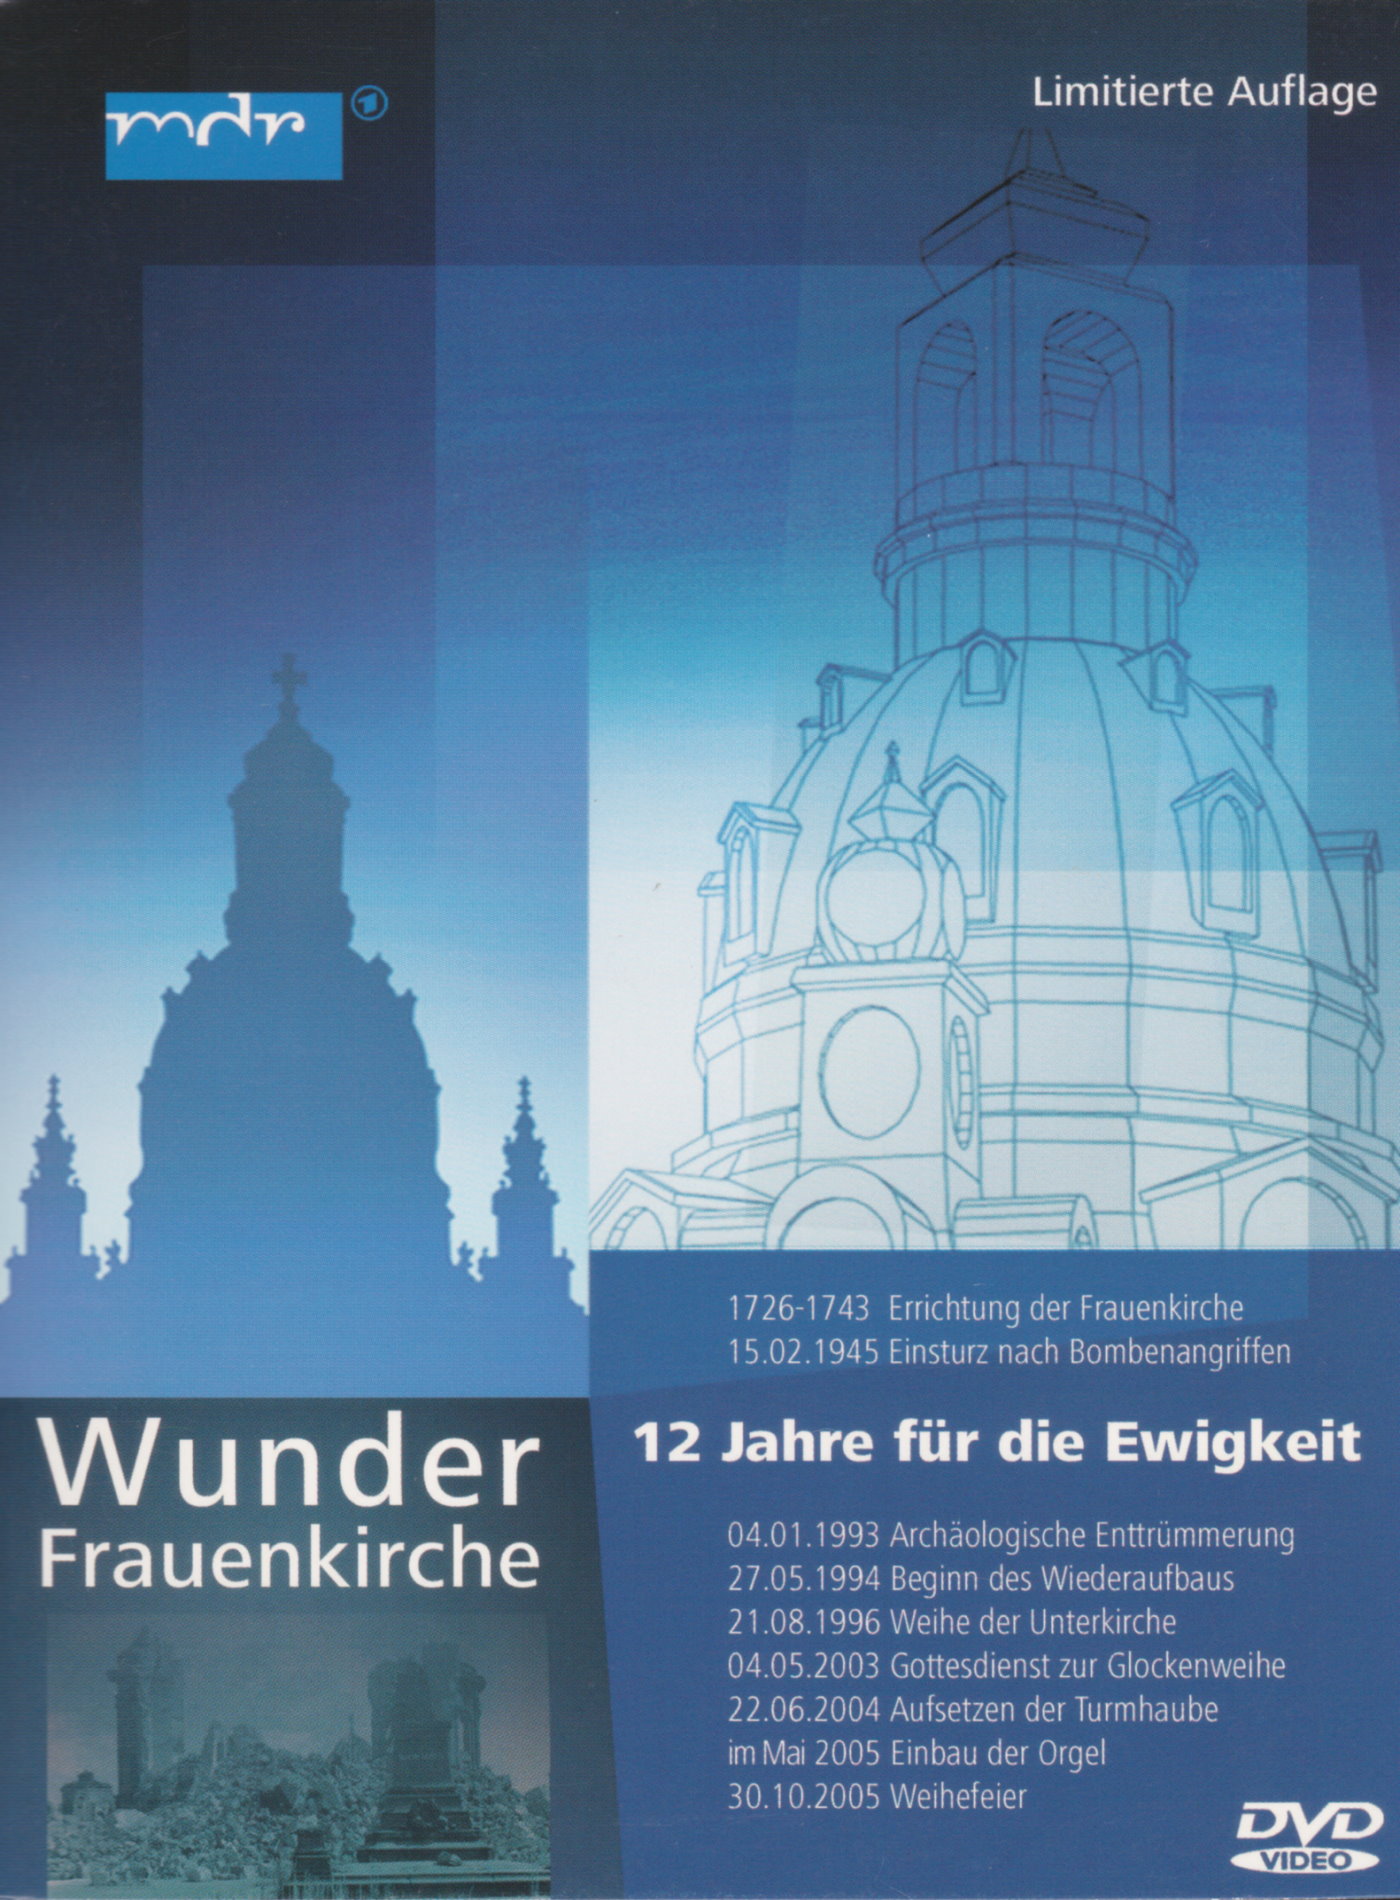 Cover - Wunder Frauenkirche - 12 Jahre für die Ewigkeit.jpg